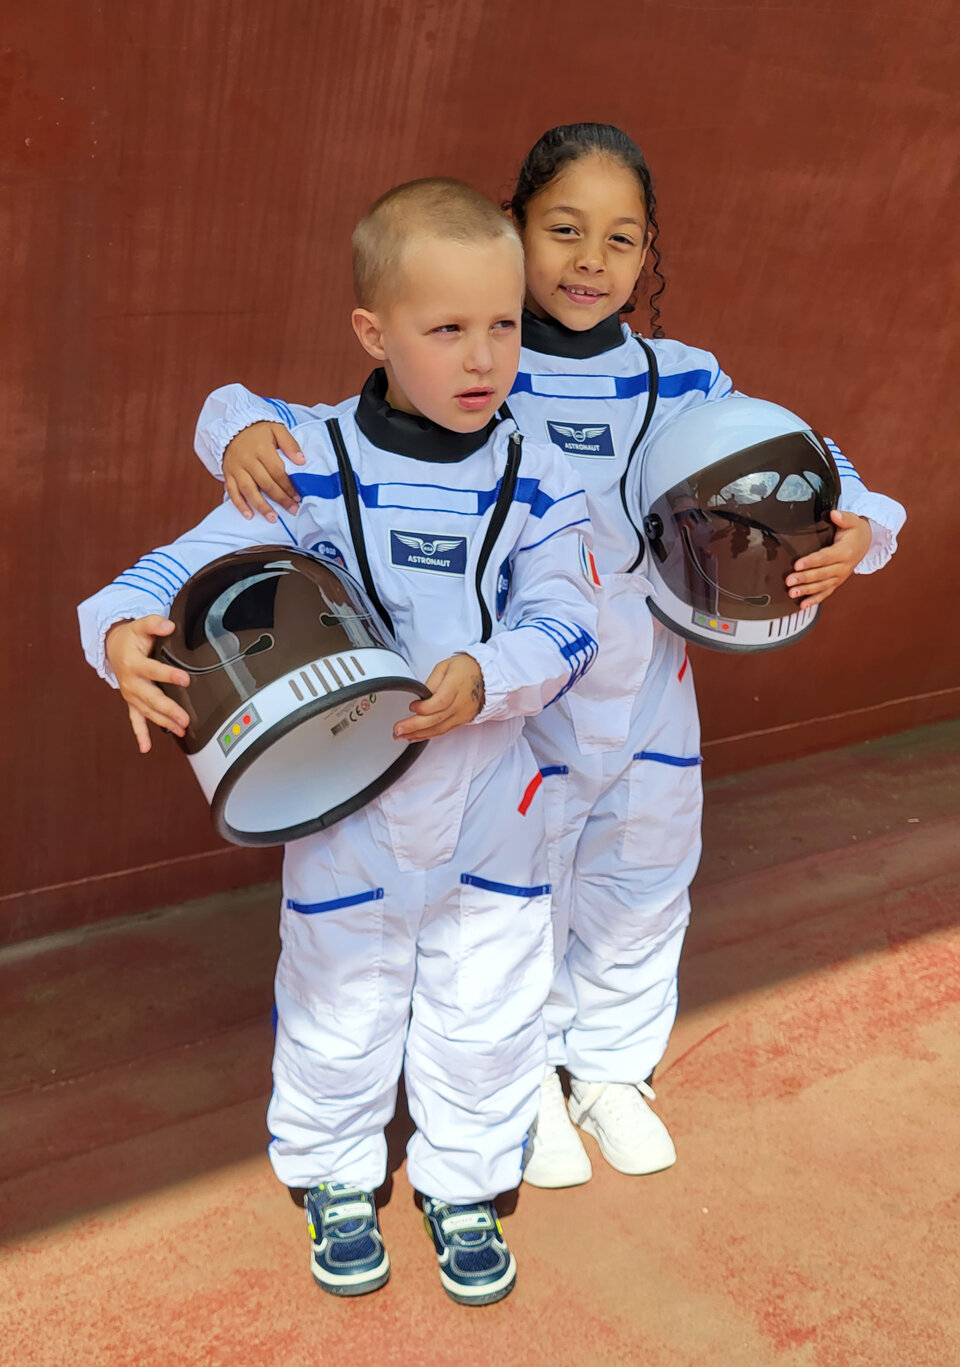 Spesso i bambini e le bambine si chiedono cosa faranno da grandi: i costumi da astronauta potrebbero essere la scintilla che li porterà a intraprendere una futura carriera nello spazio.